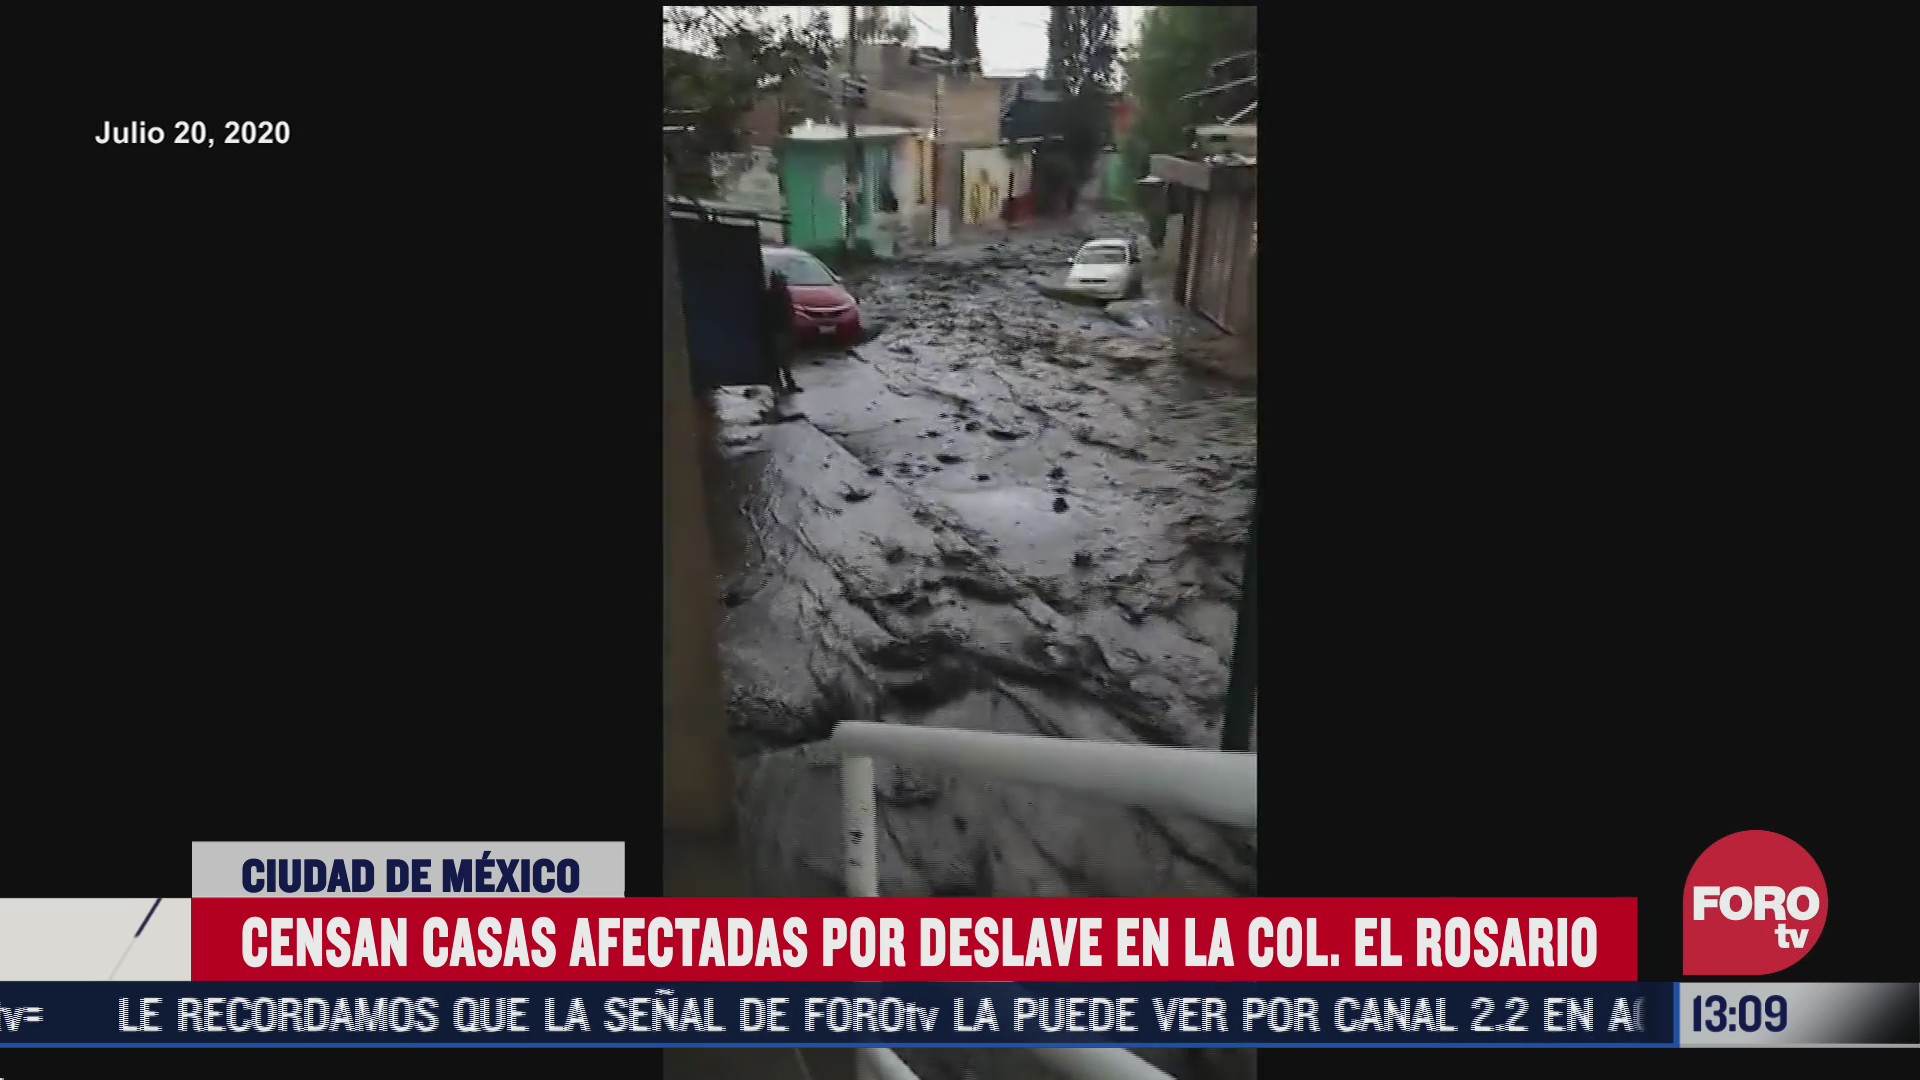 censan casas afectadas por deslave en la colonia el rosario alcaldia tlahuac